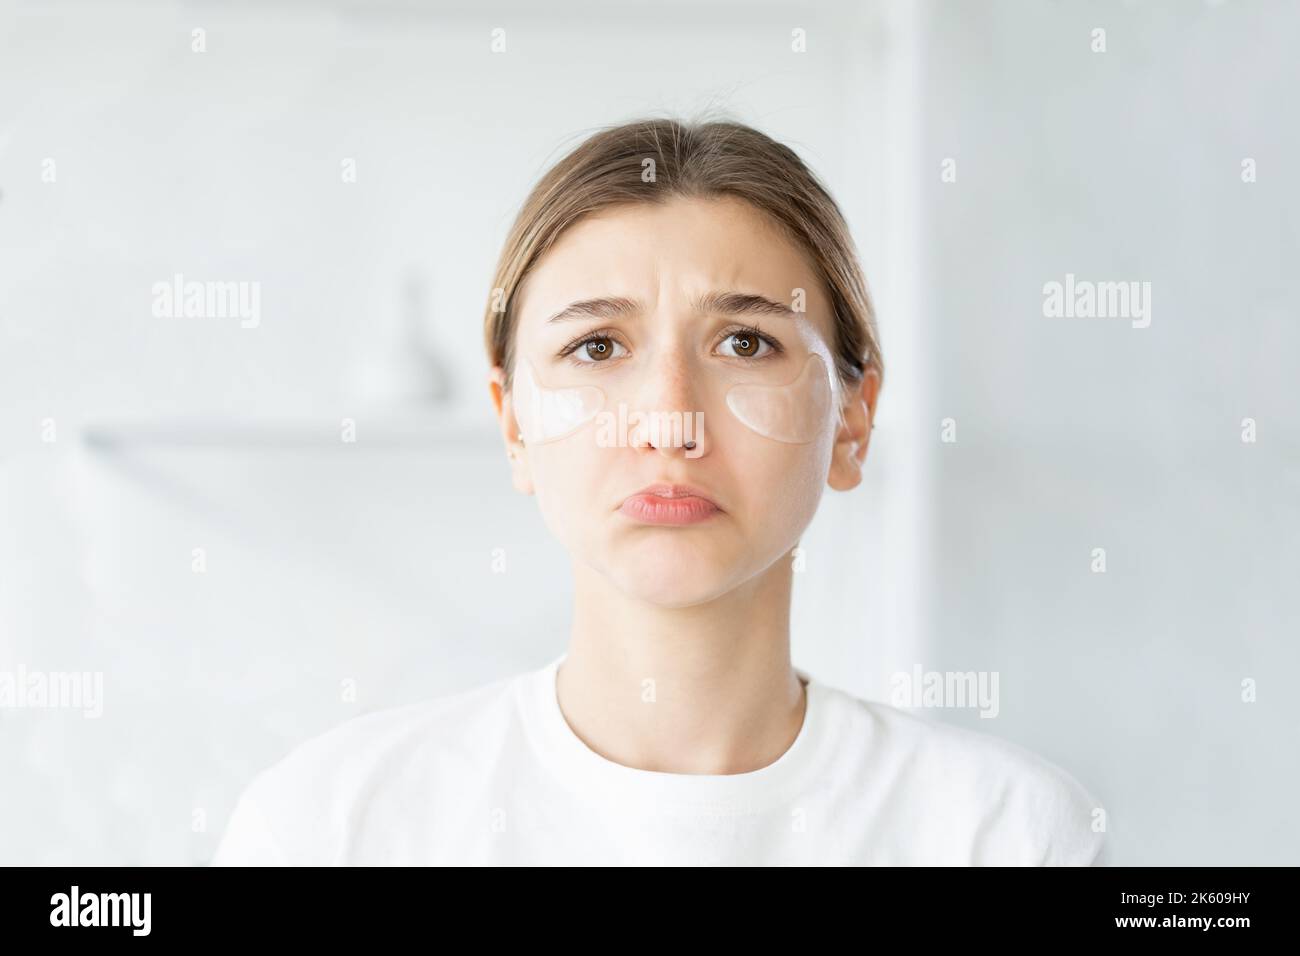 cosméticos alergia piel sensible cara triste de la mujer Foto de stock